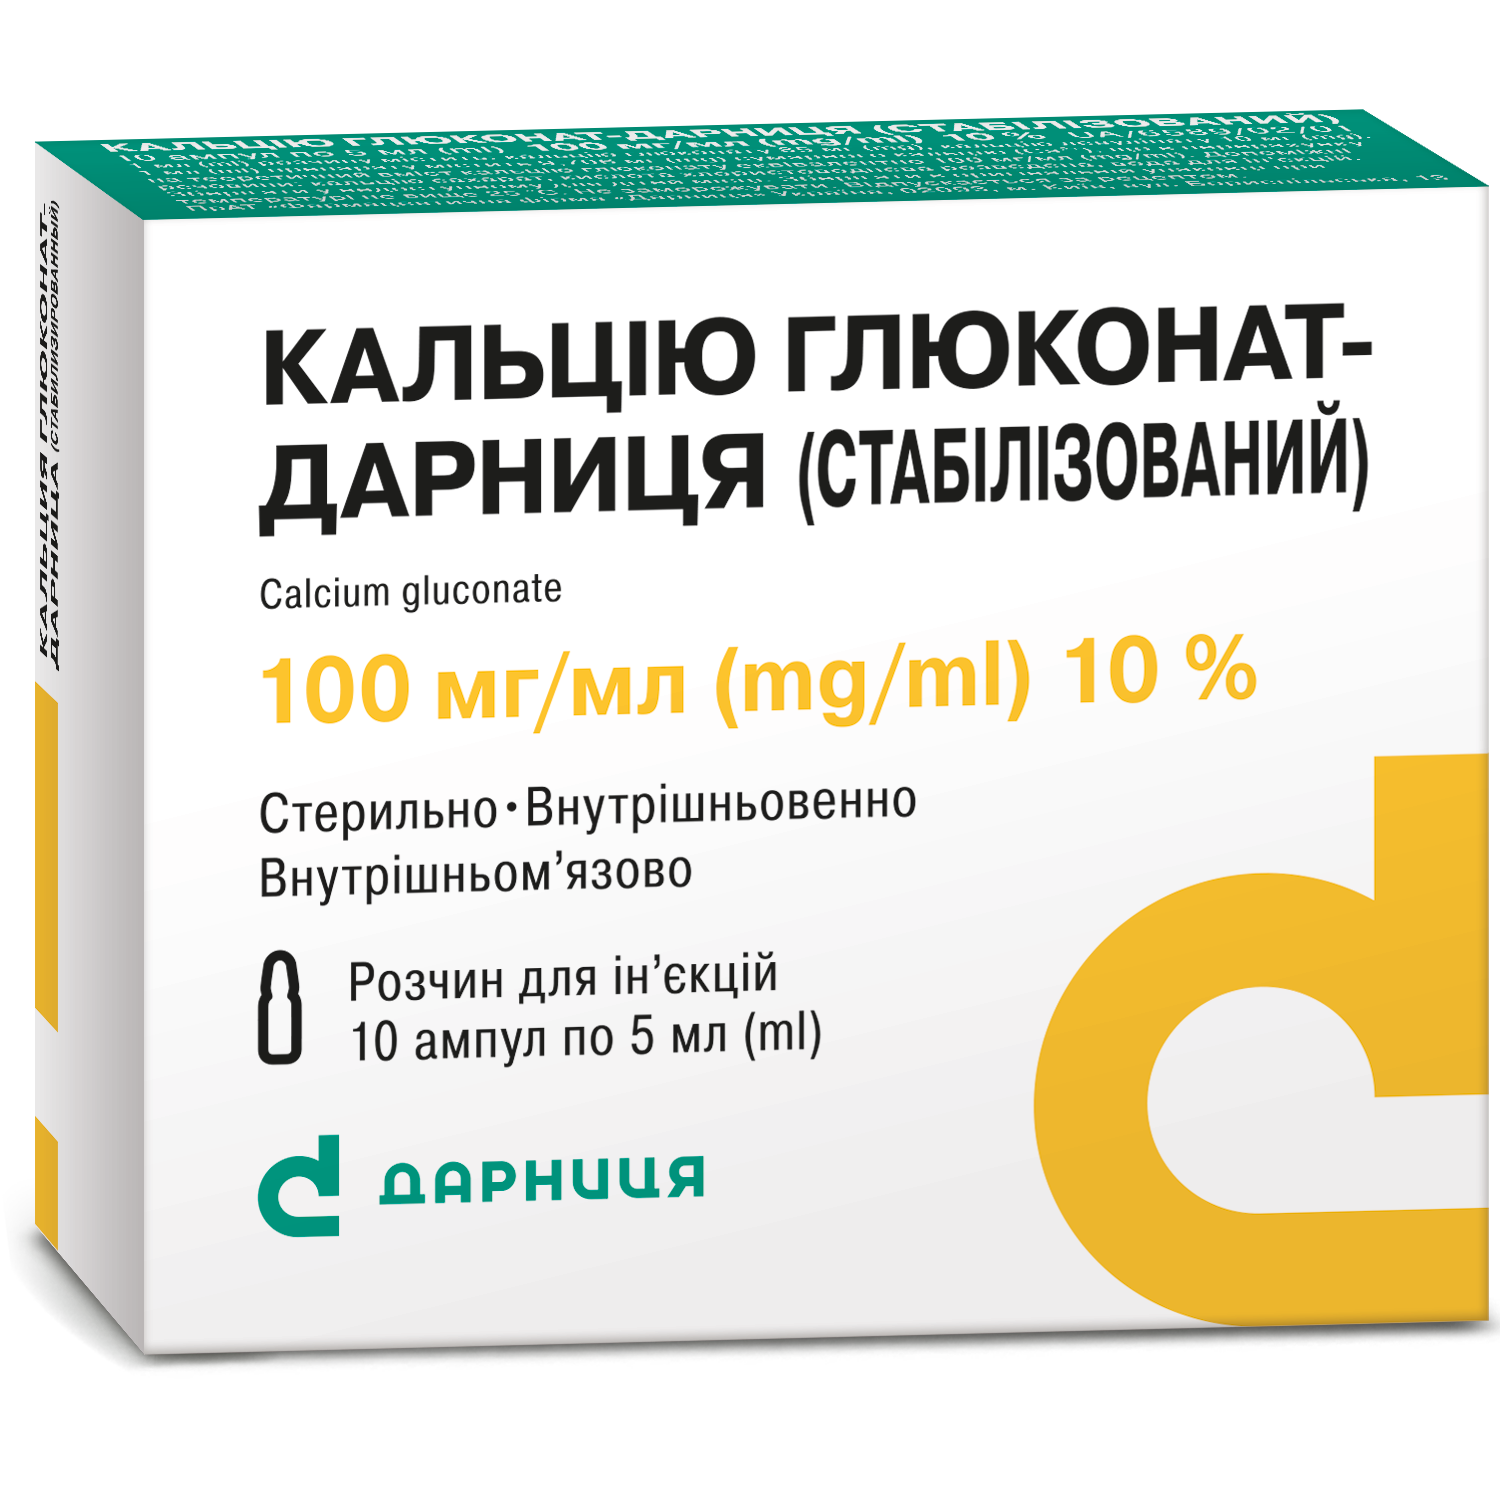 Calcium gluconate-Darnitsa